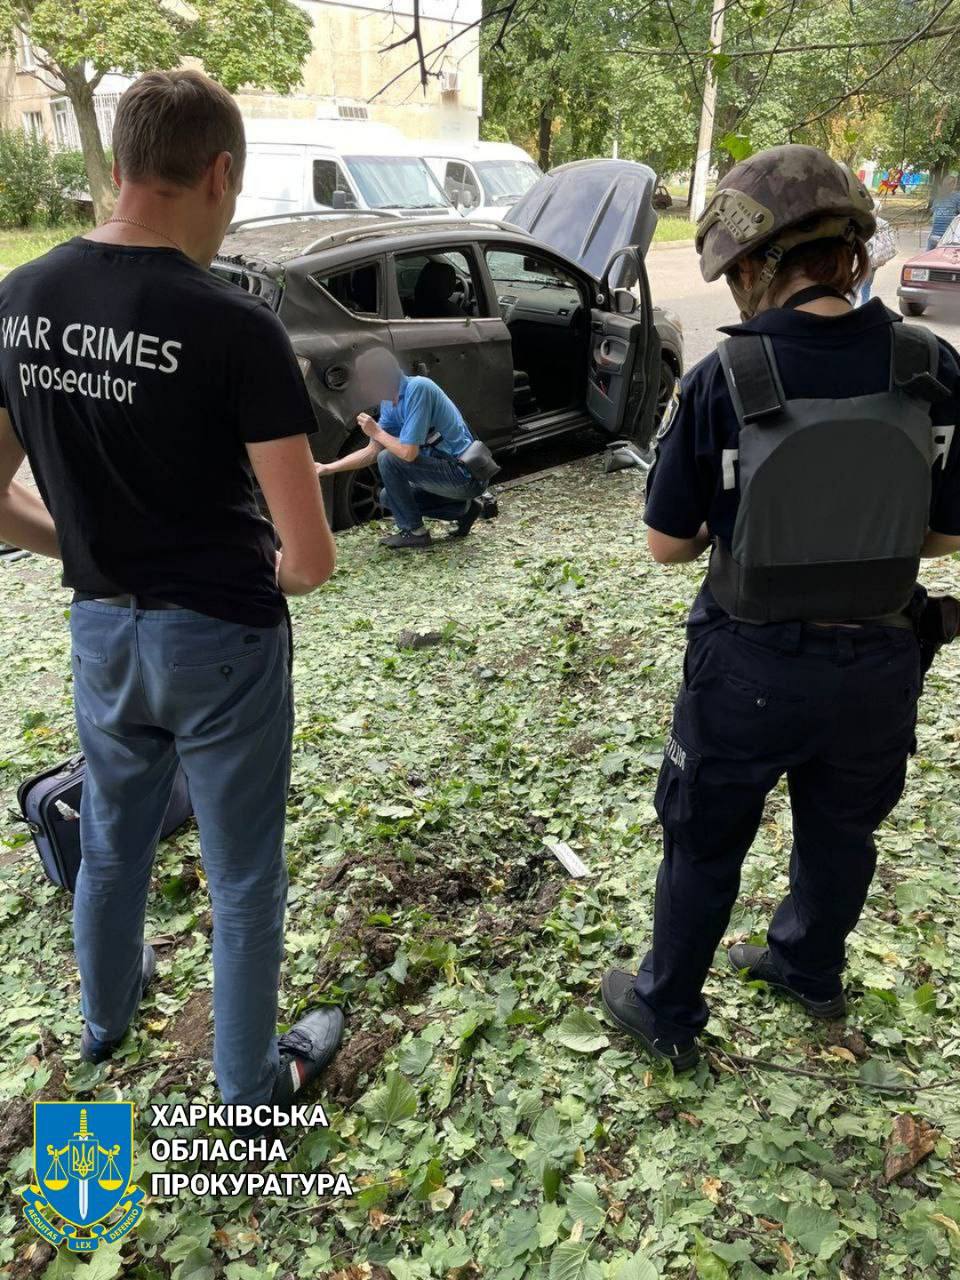 Прокуроры осматривают сгоревшую машину в Харькове после российского обстрела